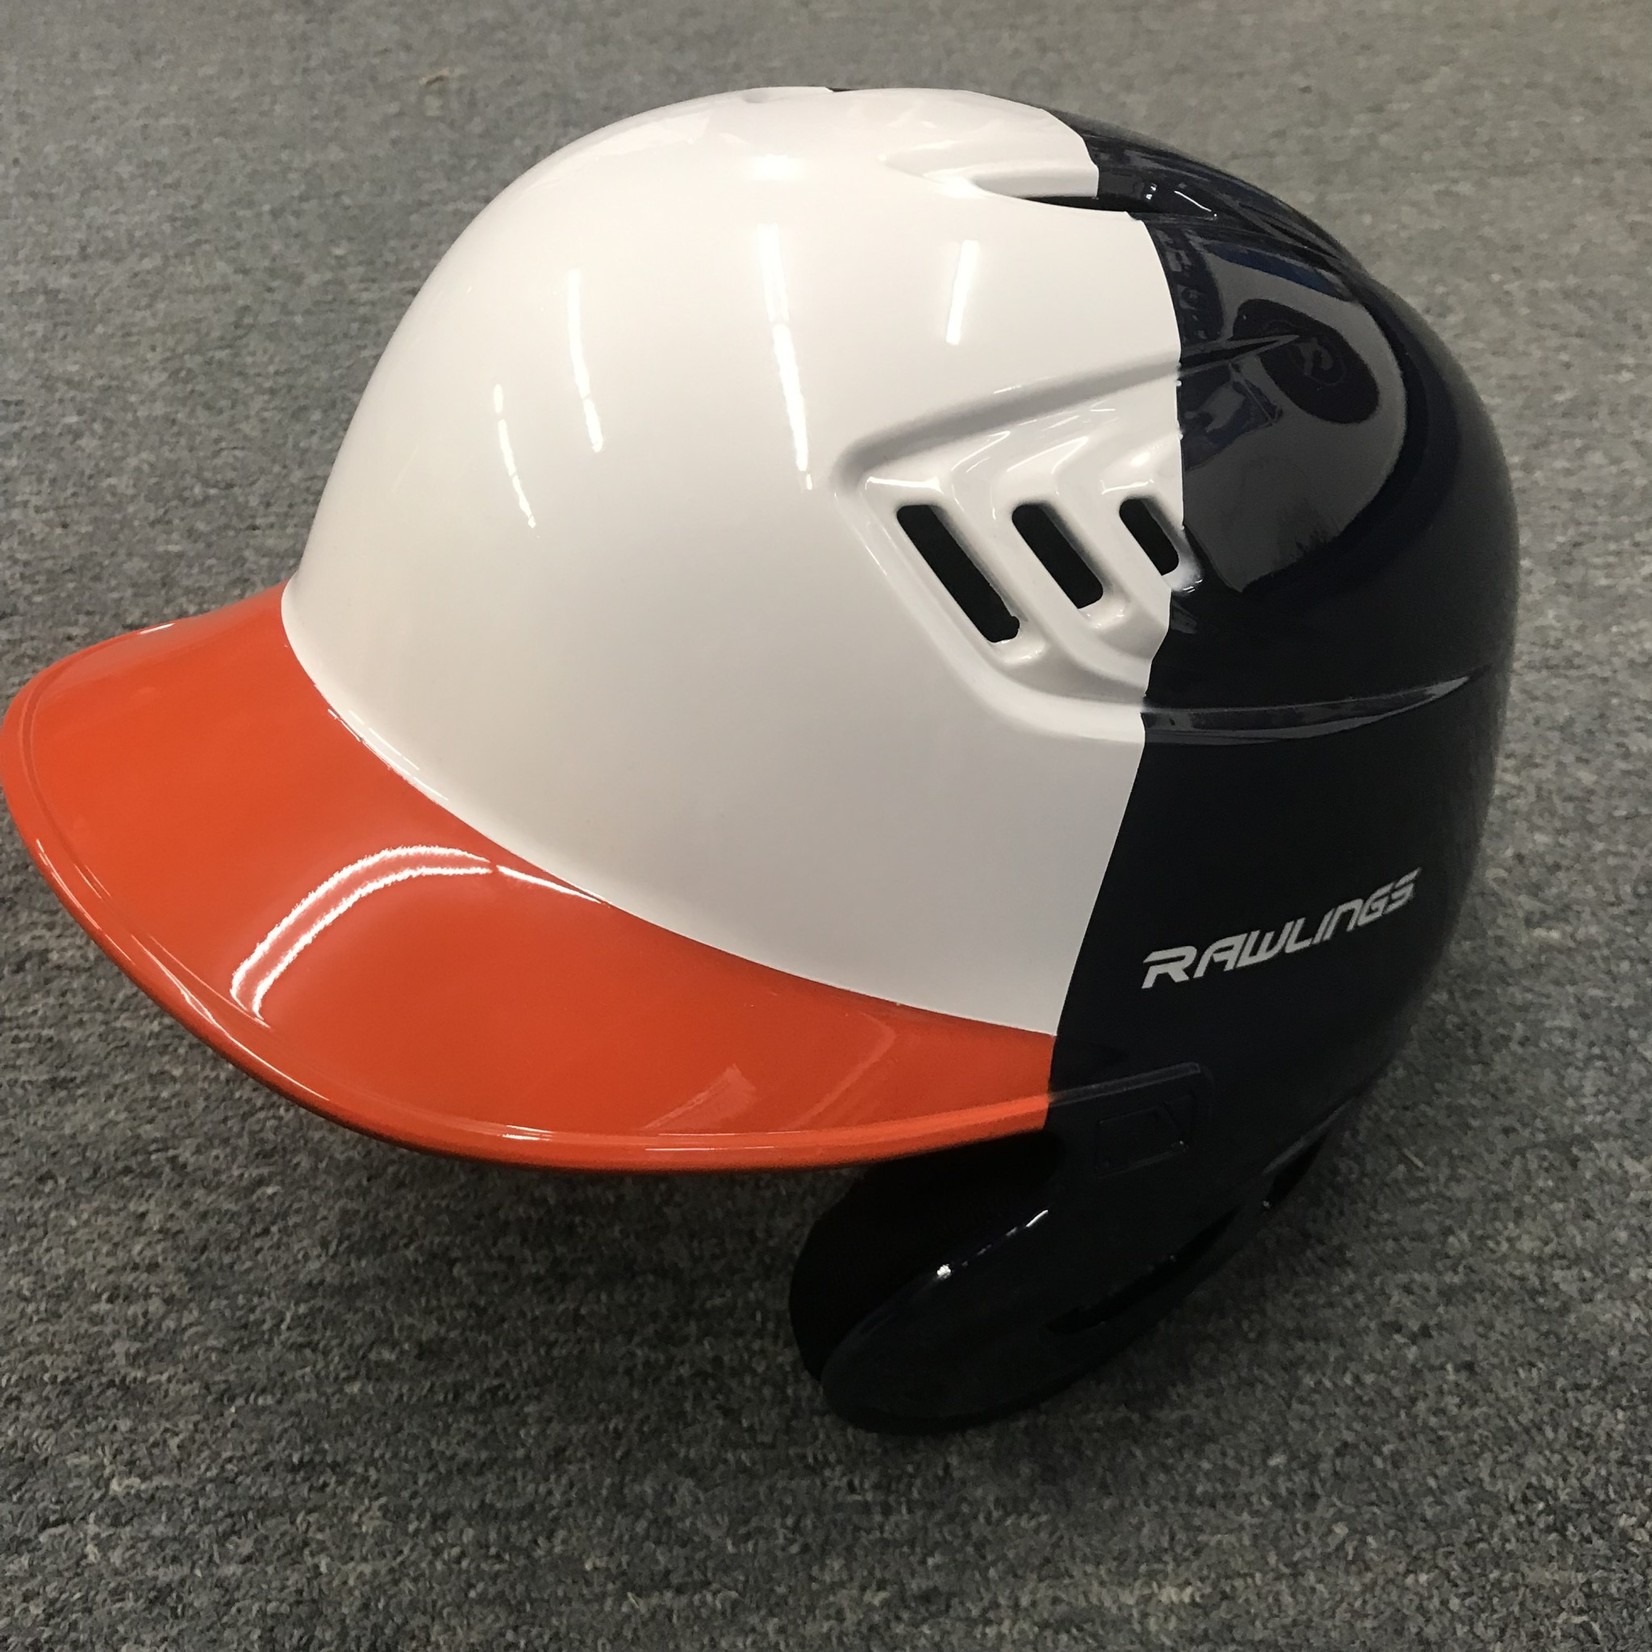 Rawlings Custom Painted Helmet - navy/white/orange - Medium